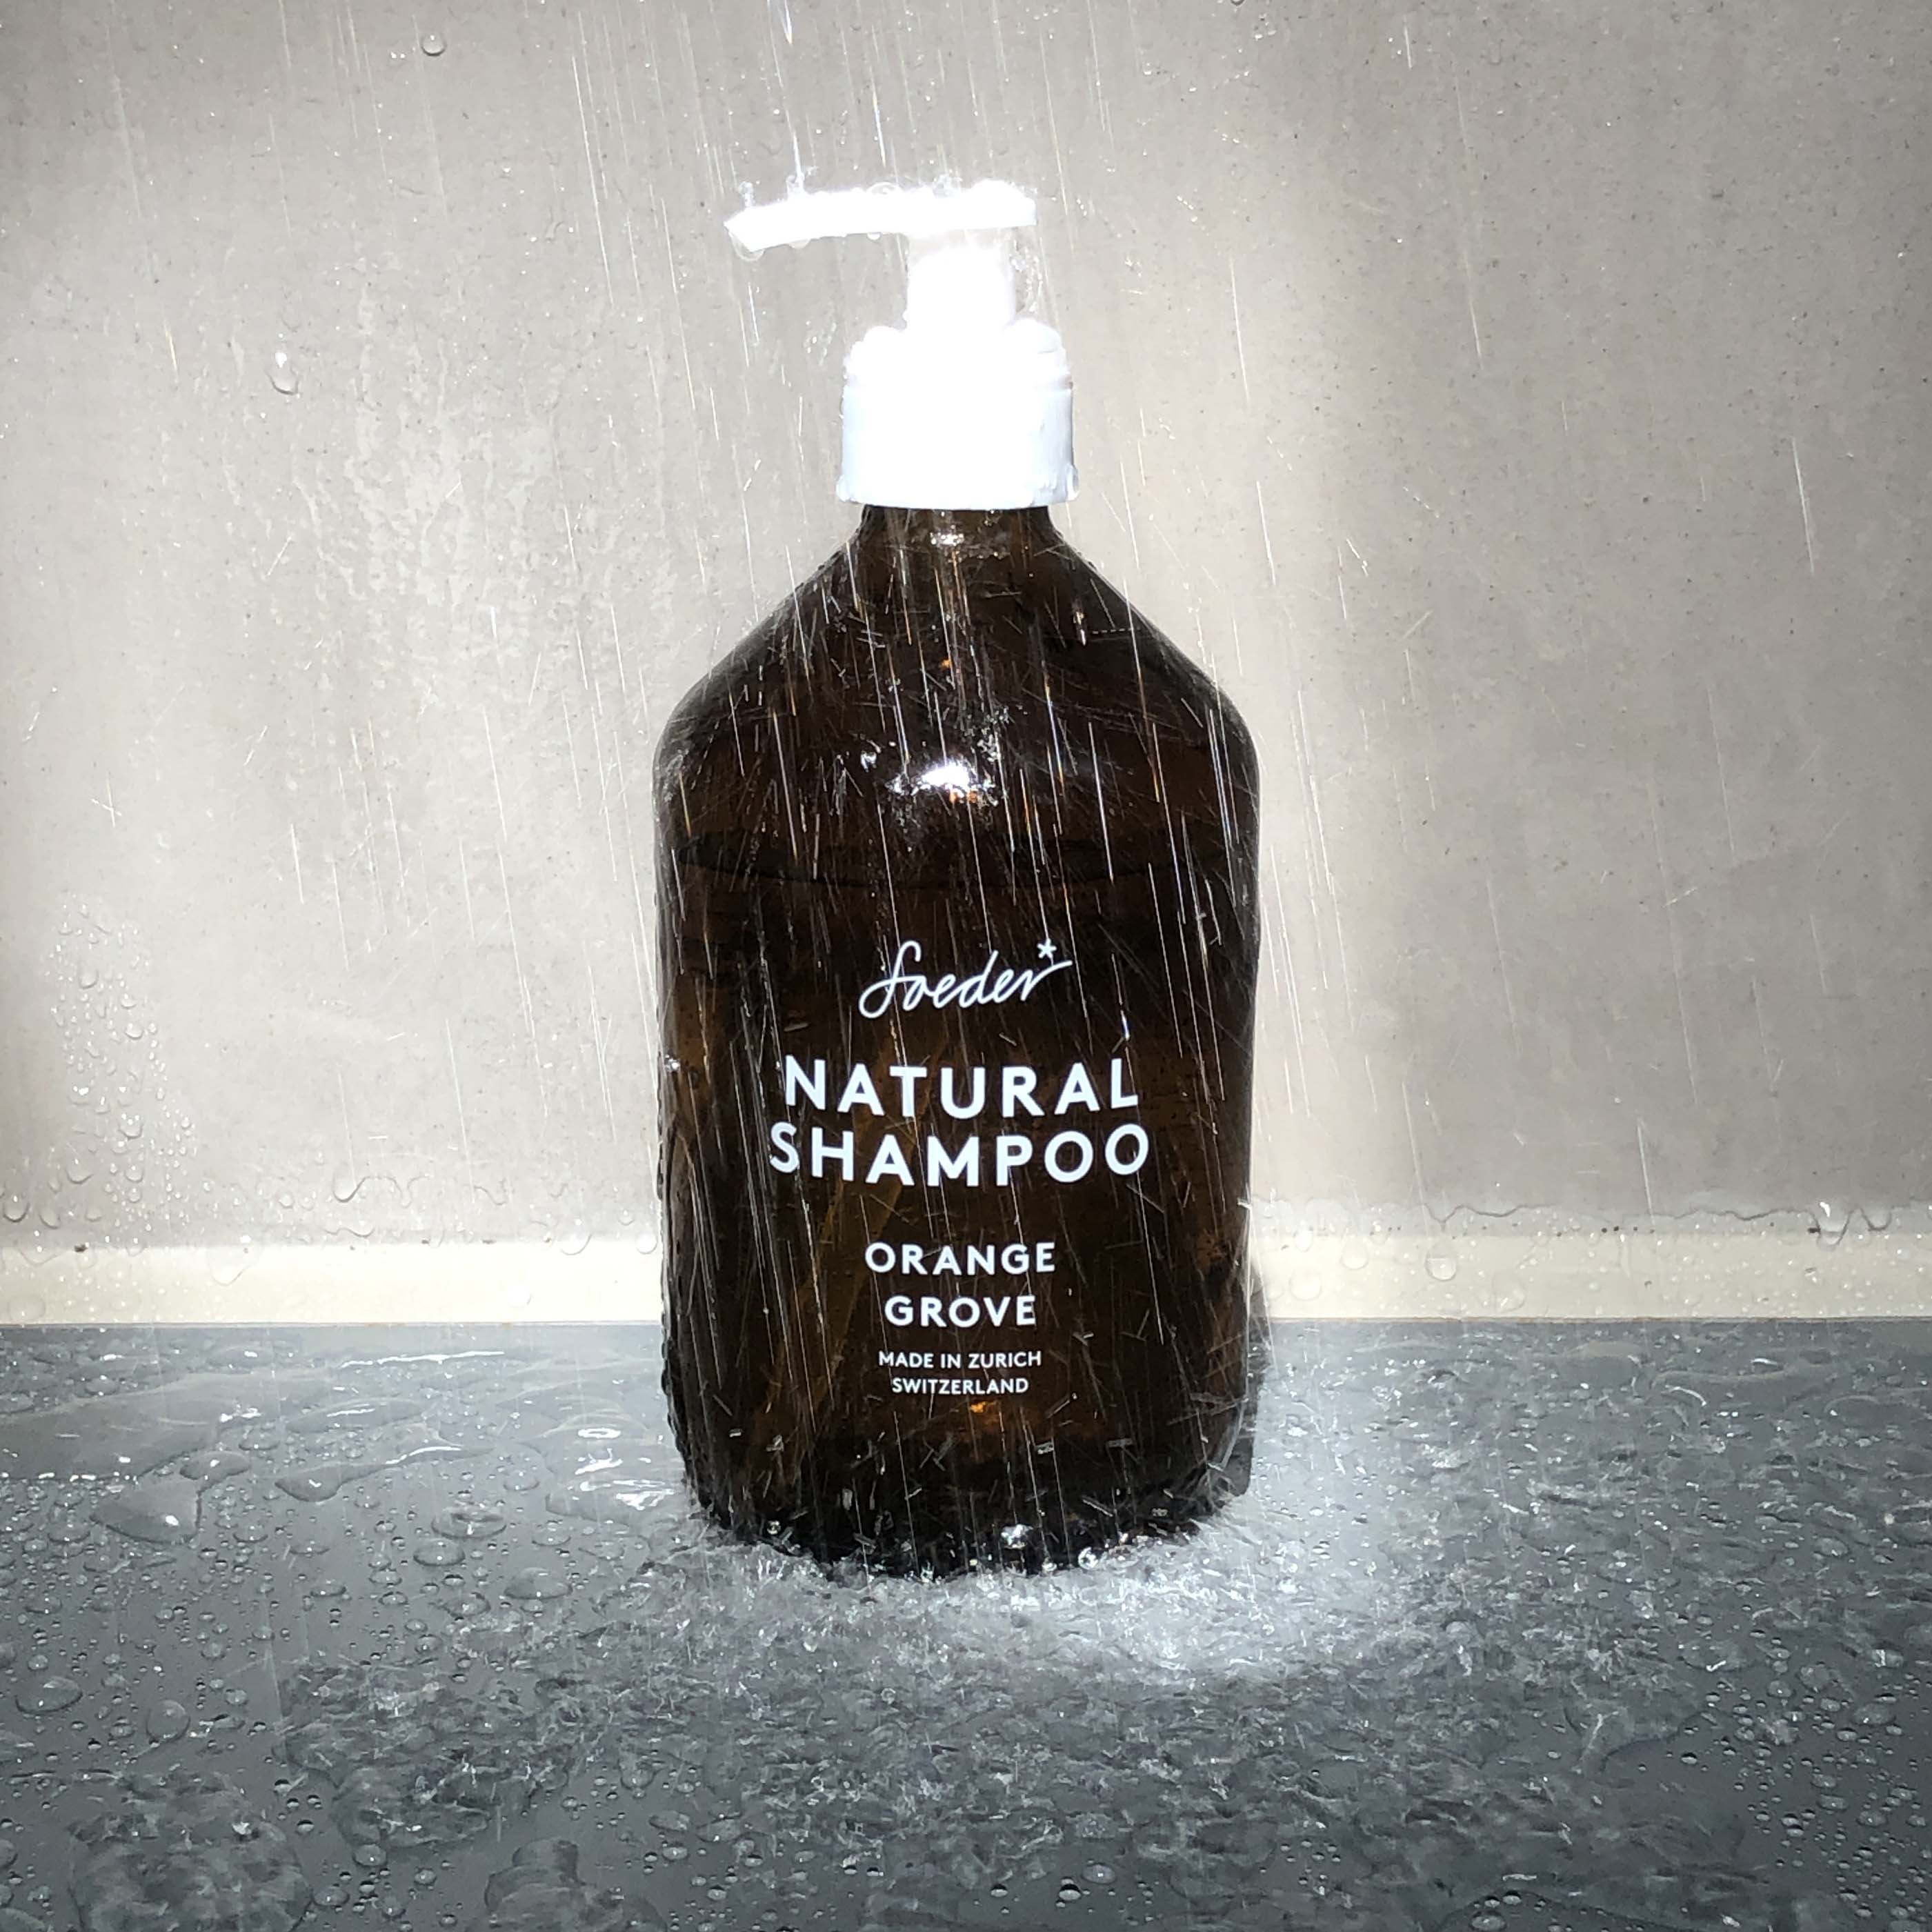 Natural Shampoo - Orange Grove 500 ml von soeder*